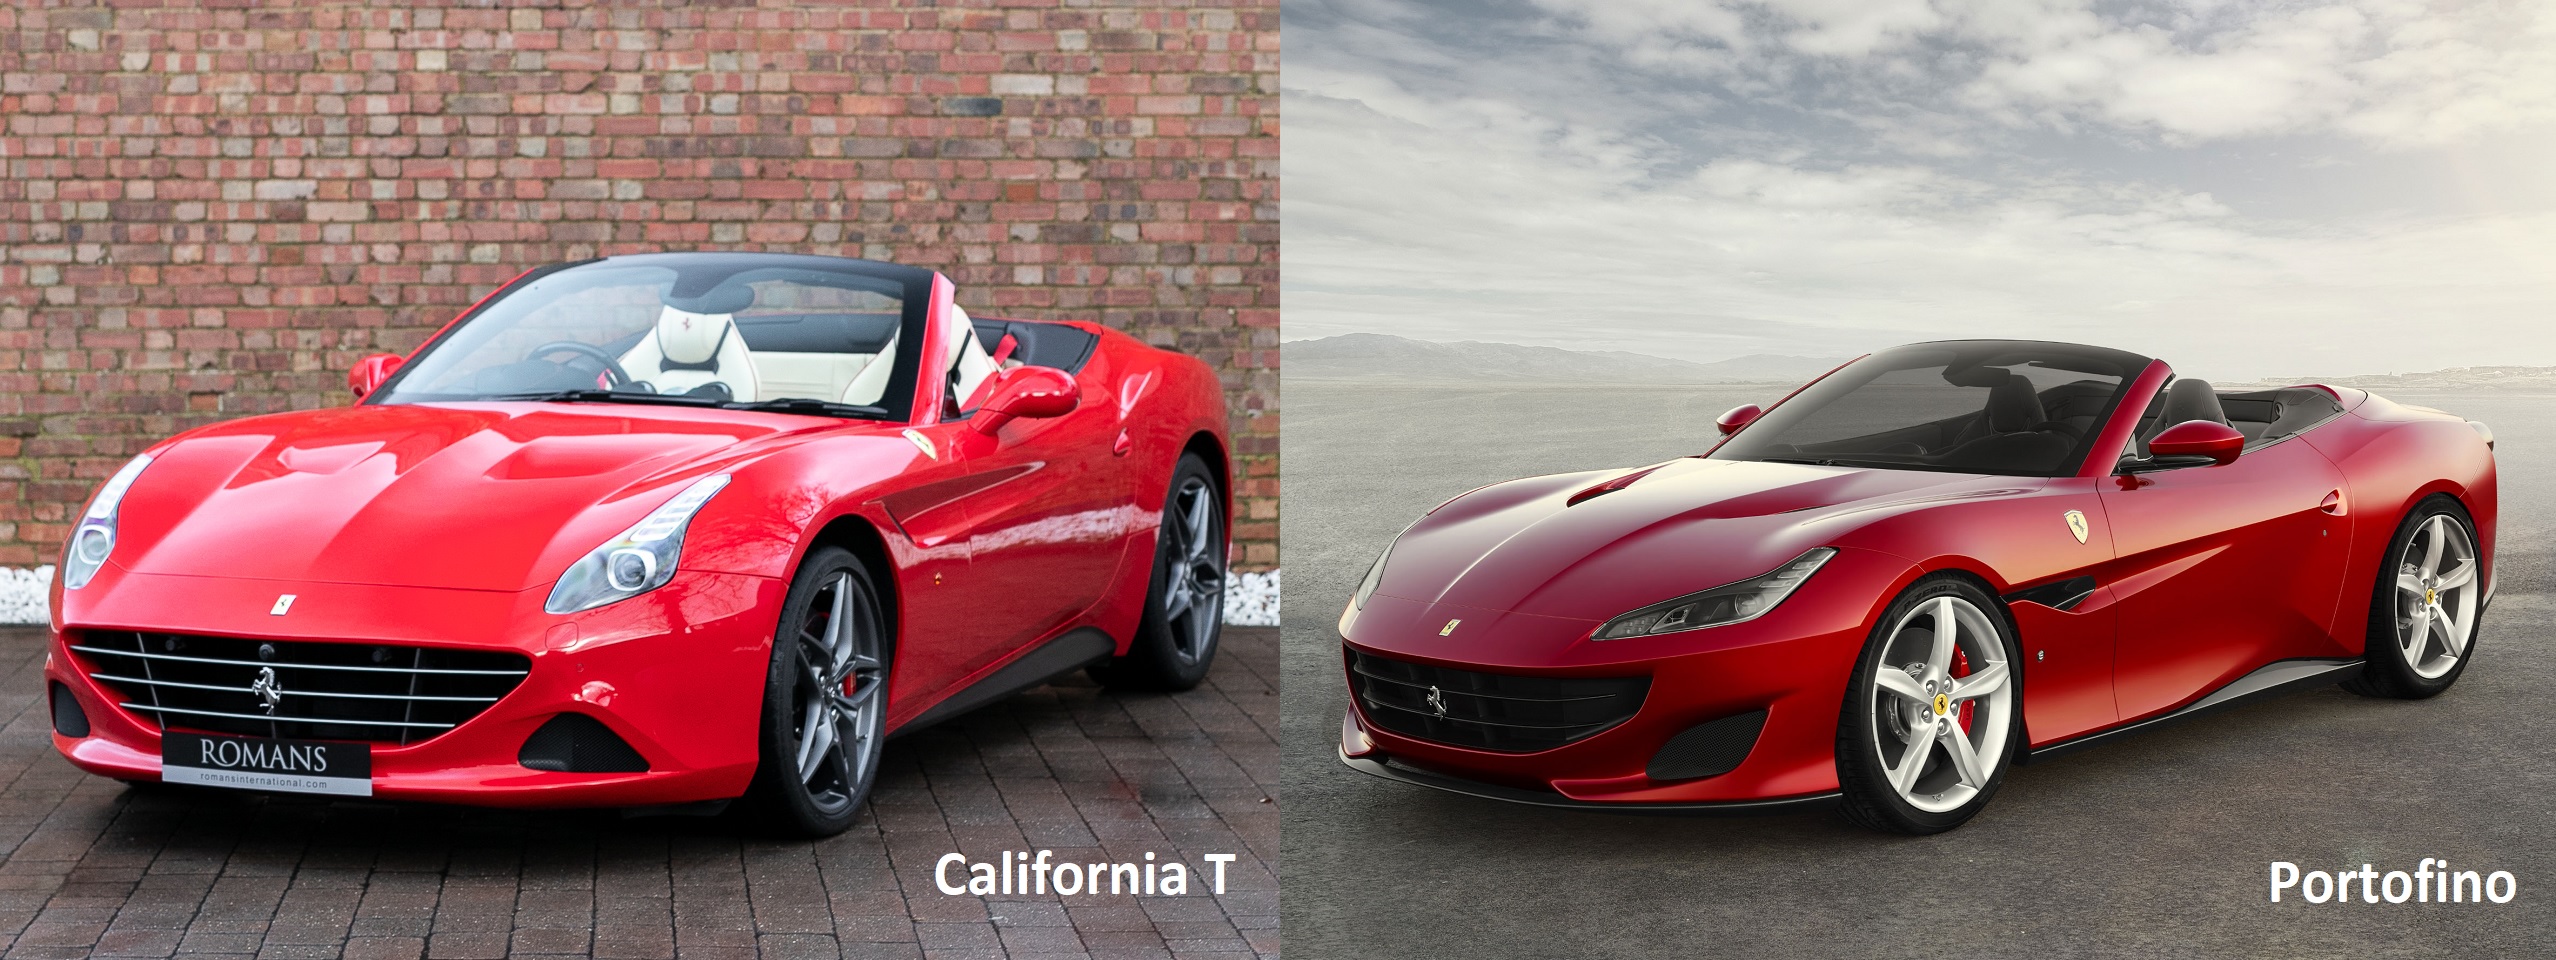 Ferrari California T vs Ferrari Portofino